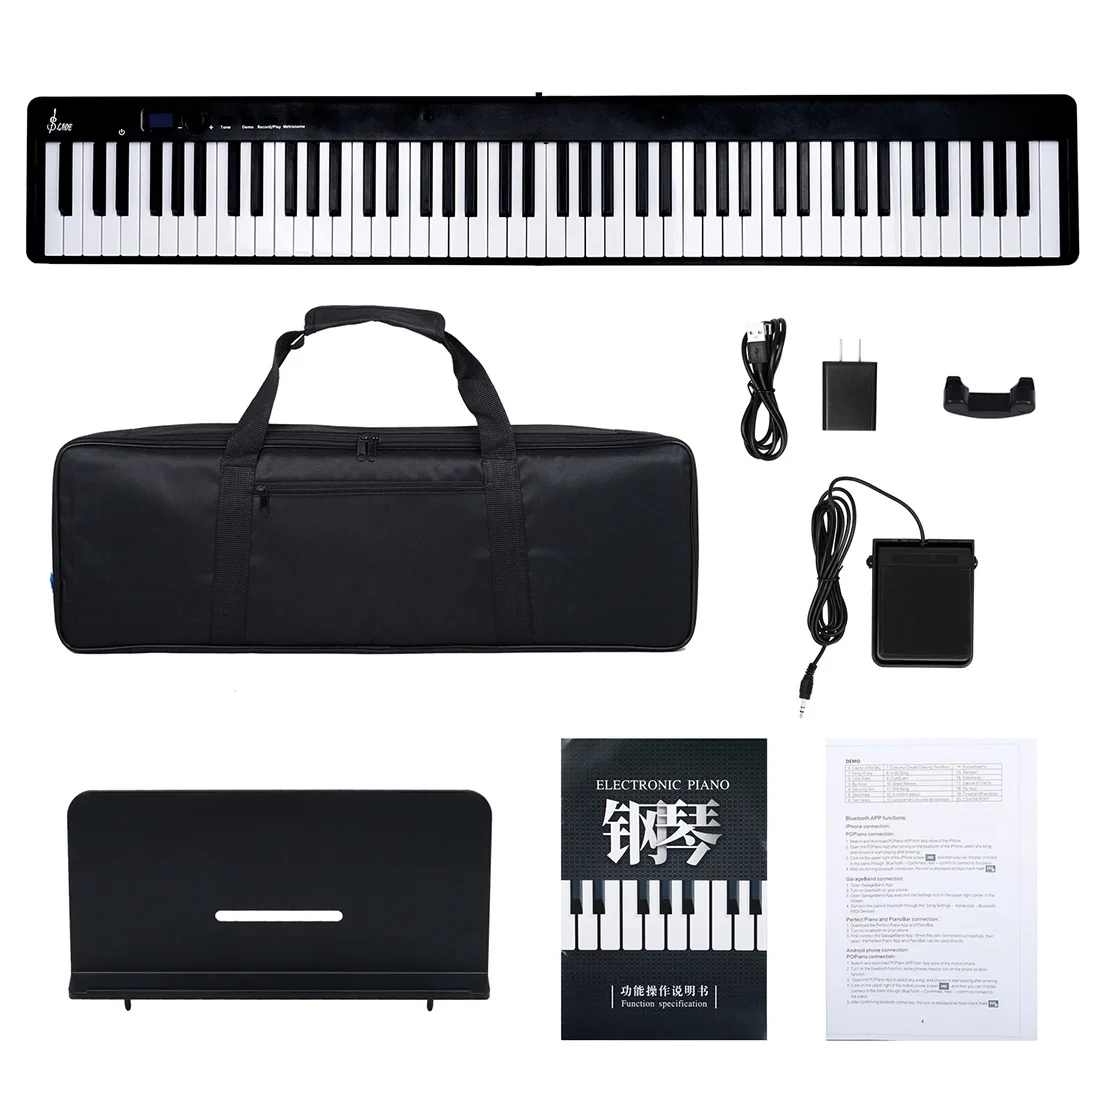 Piano Electrónico plegable portátil de 88 teclas con altavoz Dual y Bluetooth para principiantes, Piano de música electrónica profesional, nuevo